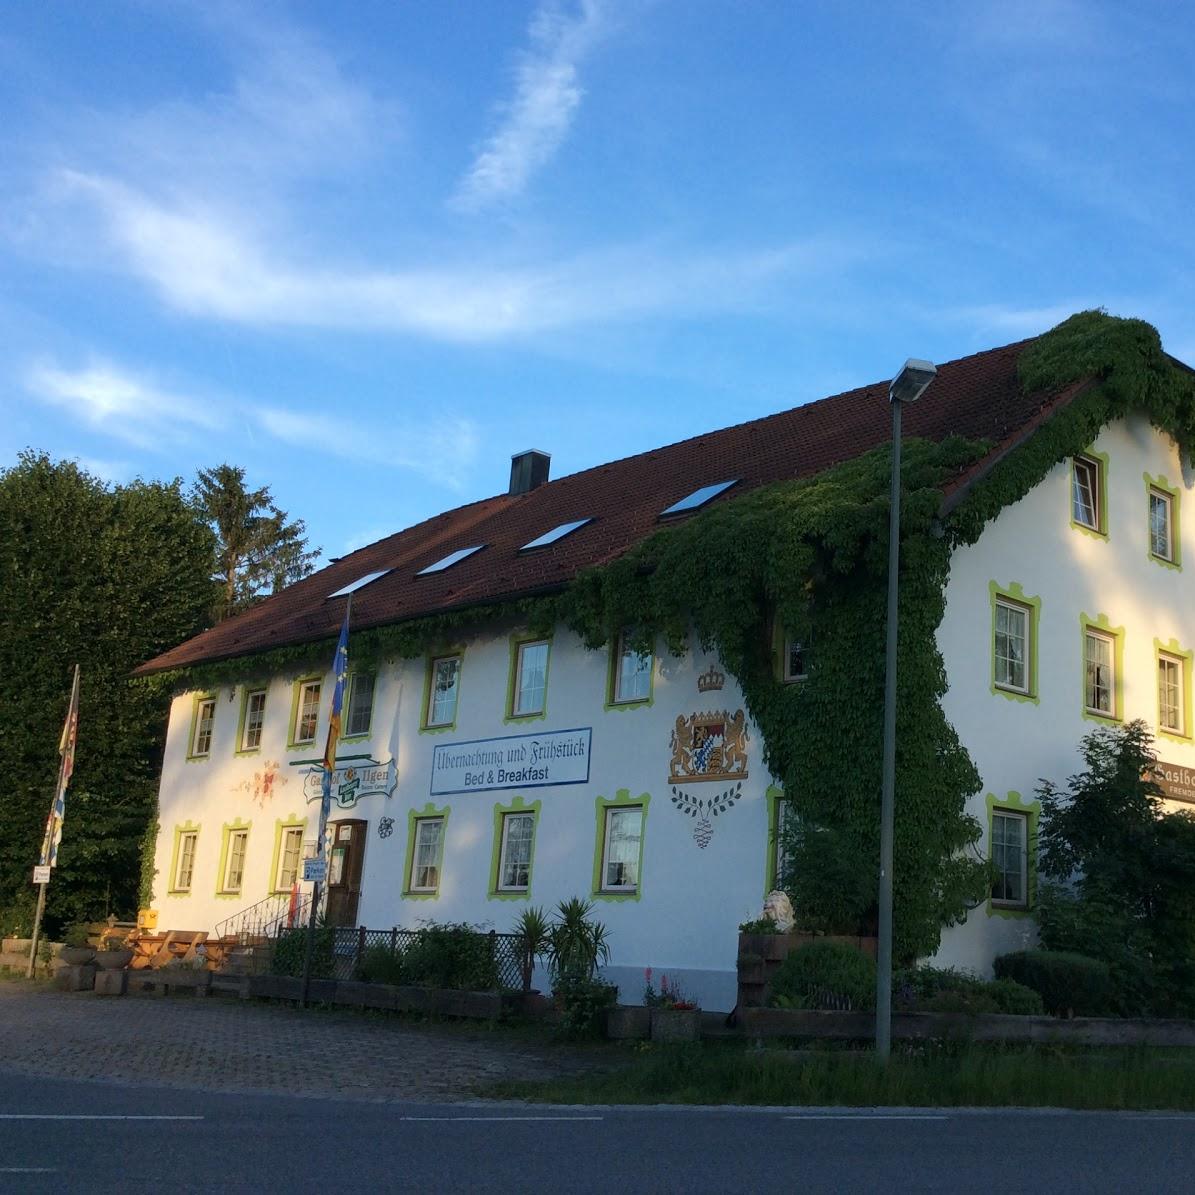 Restaurant "Pension Ilgen" in Steingaden